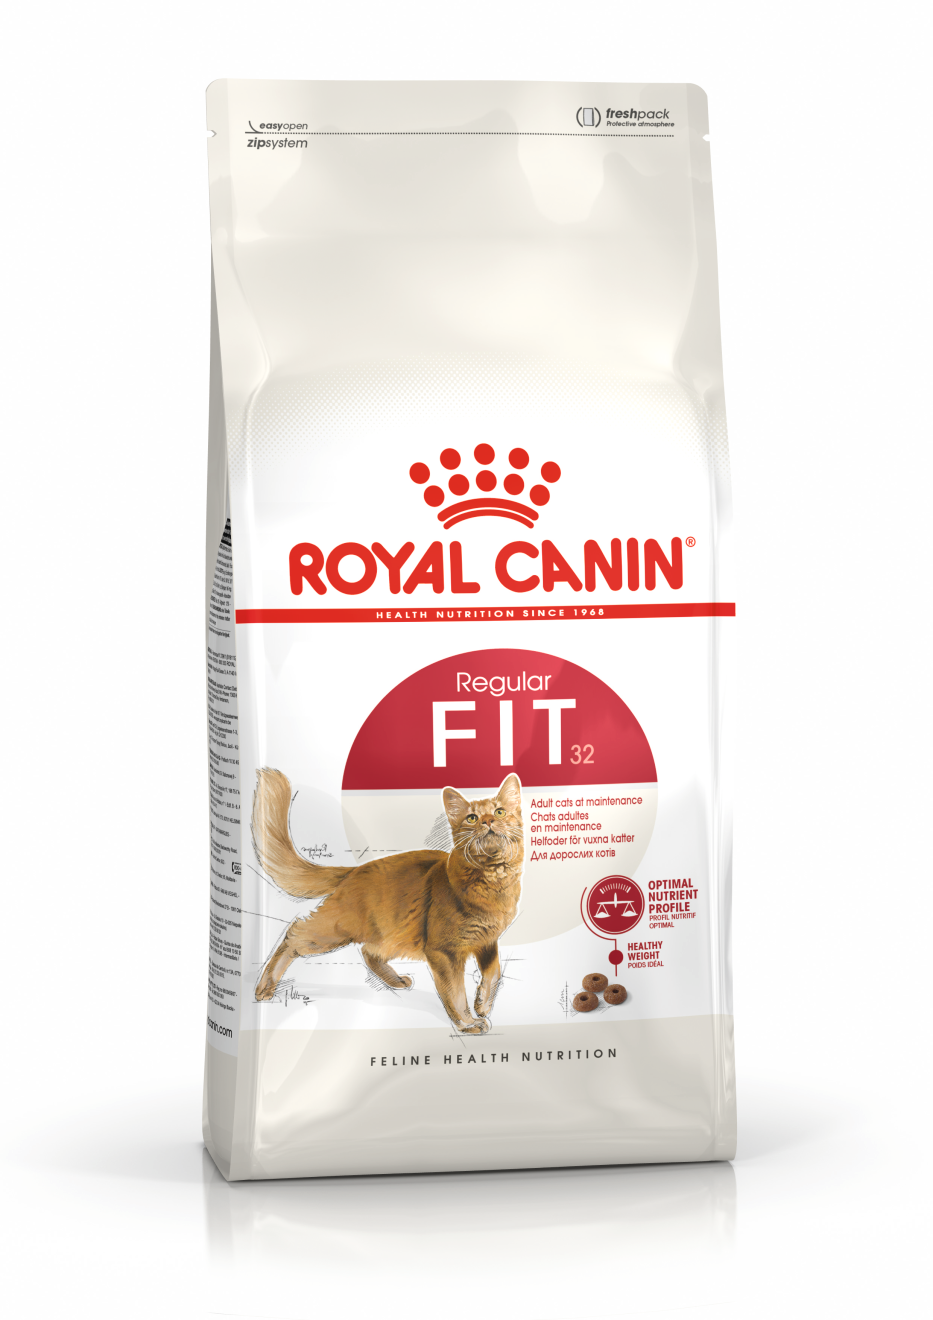 Royal Canin "FIT 32" сухой корм для кошек имеющих доступ на улицу 